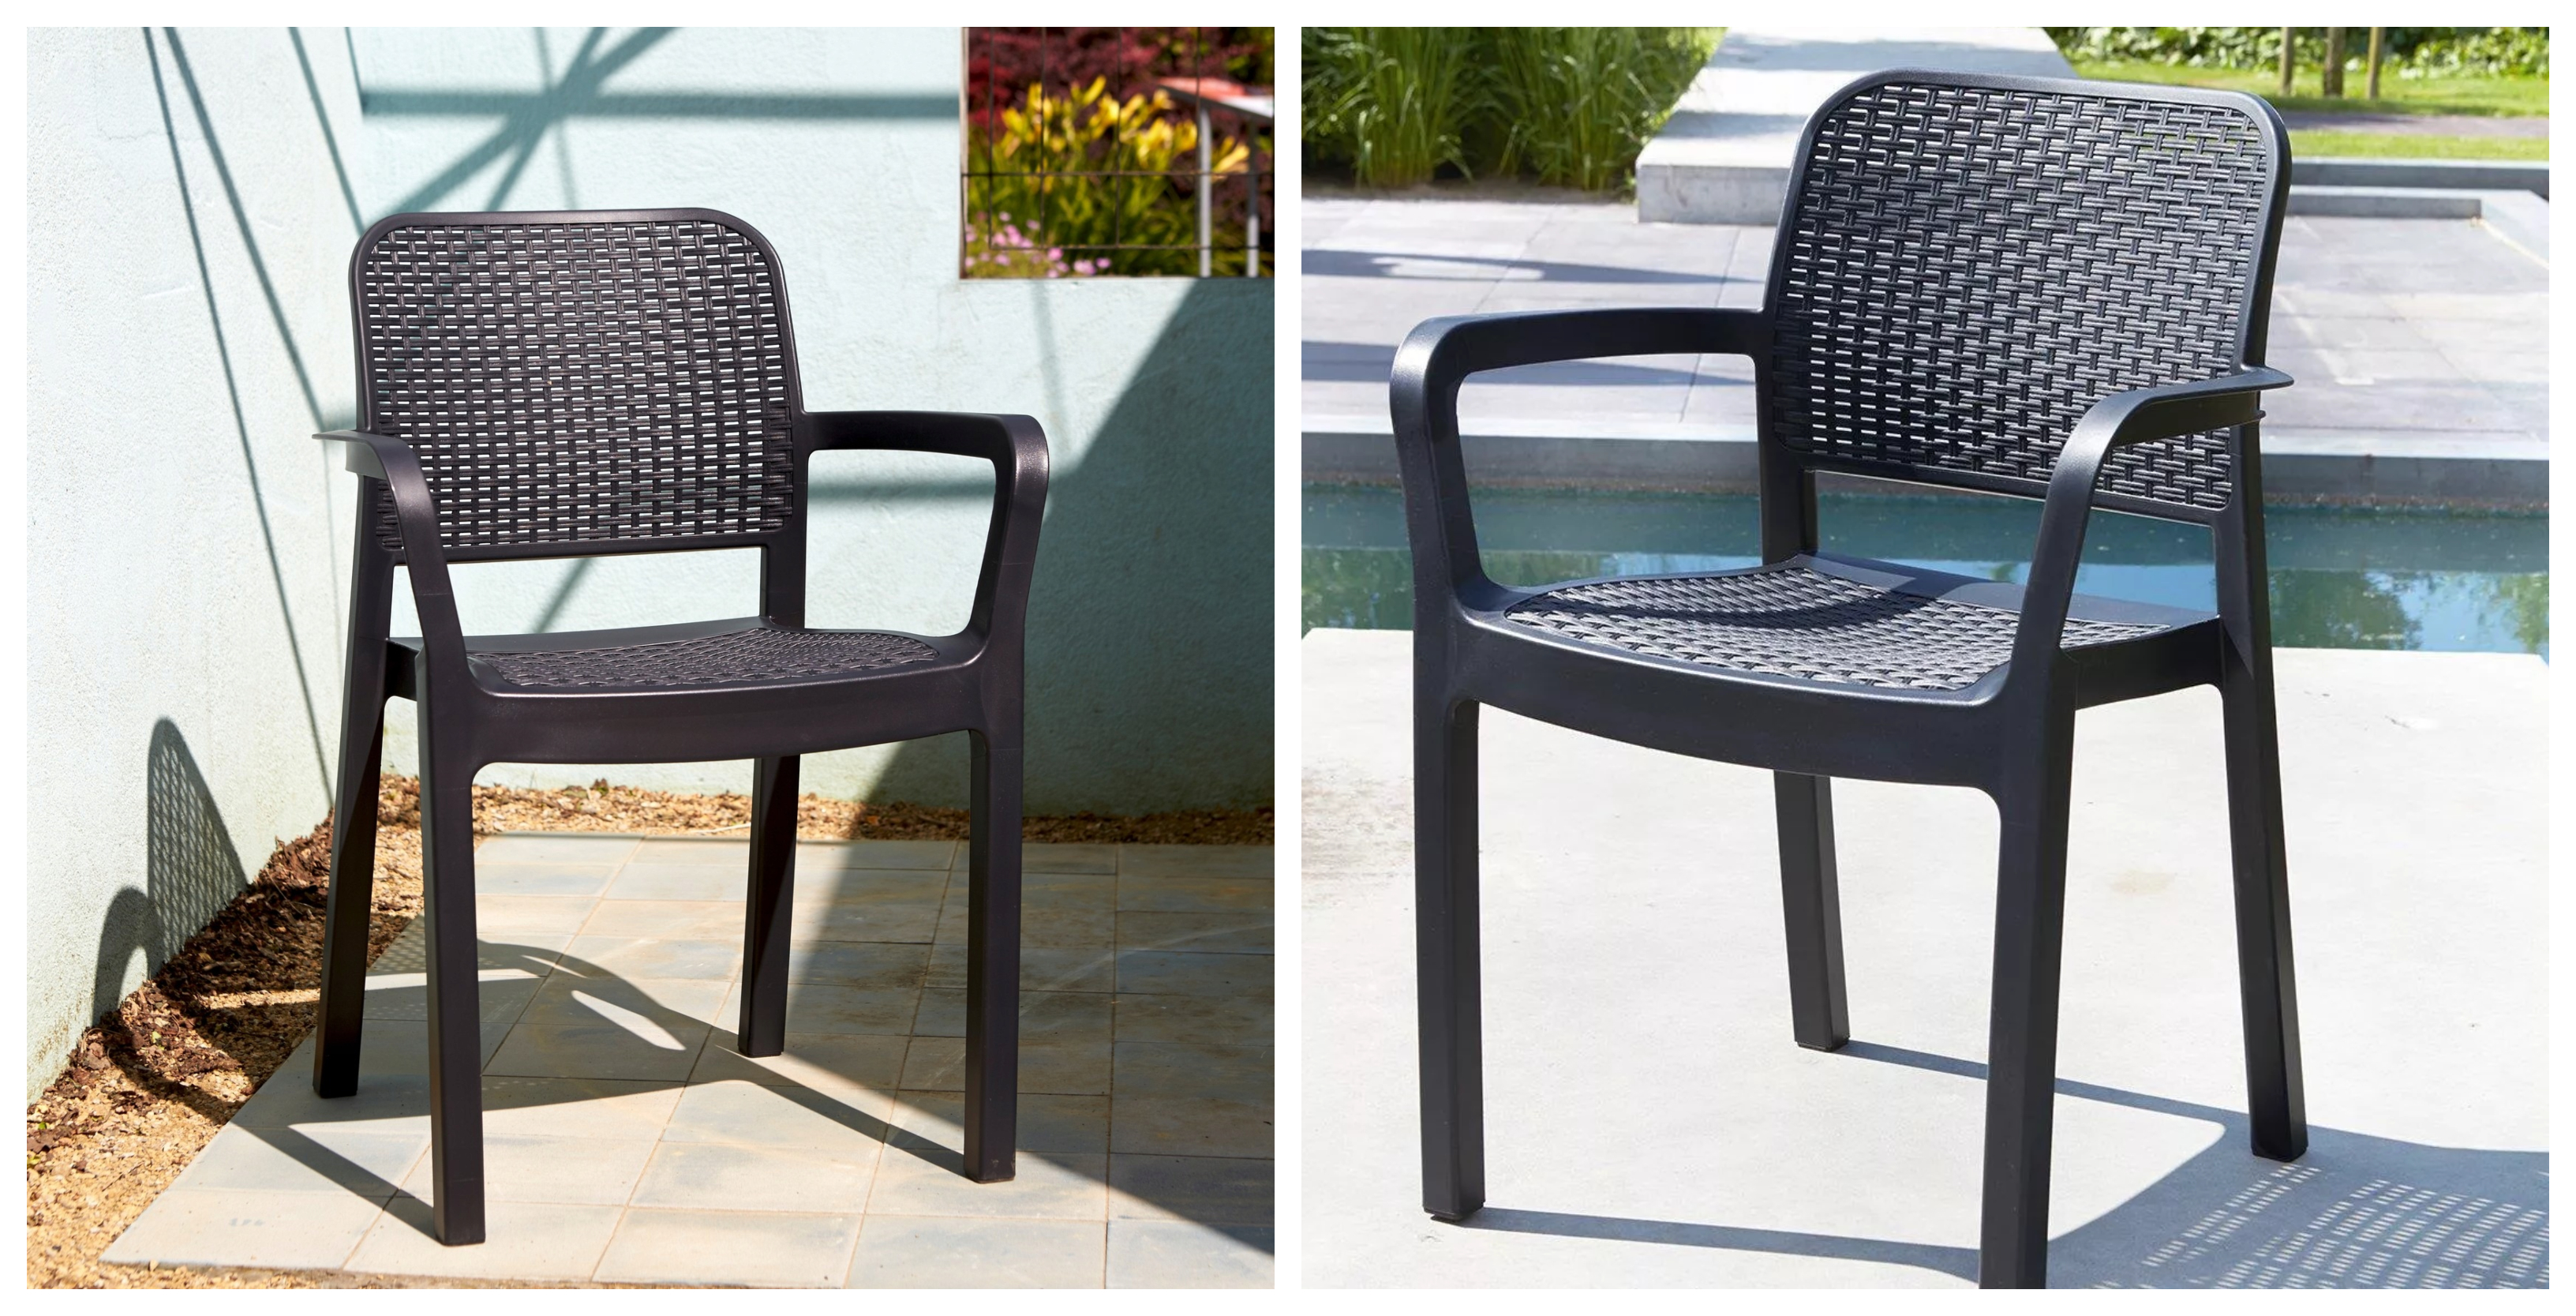 Klasická židle Keter Samanna skvěle doplní rozličné designové koncepty a styly, ať už bude stát uvnitř, na zahradě, u bazénu, na terase či na balkónu.